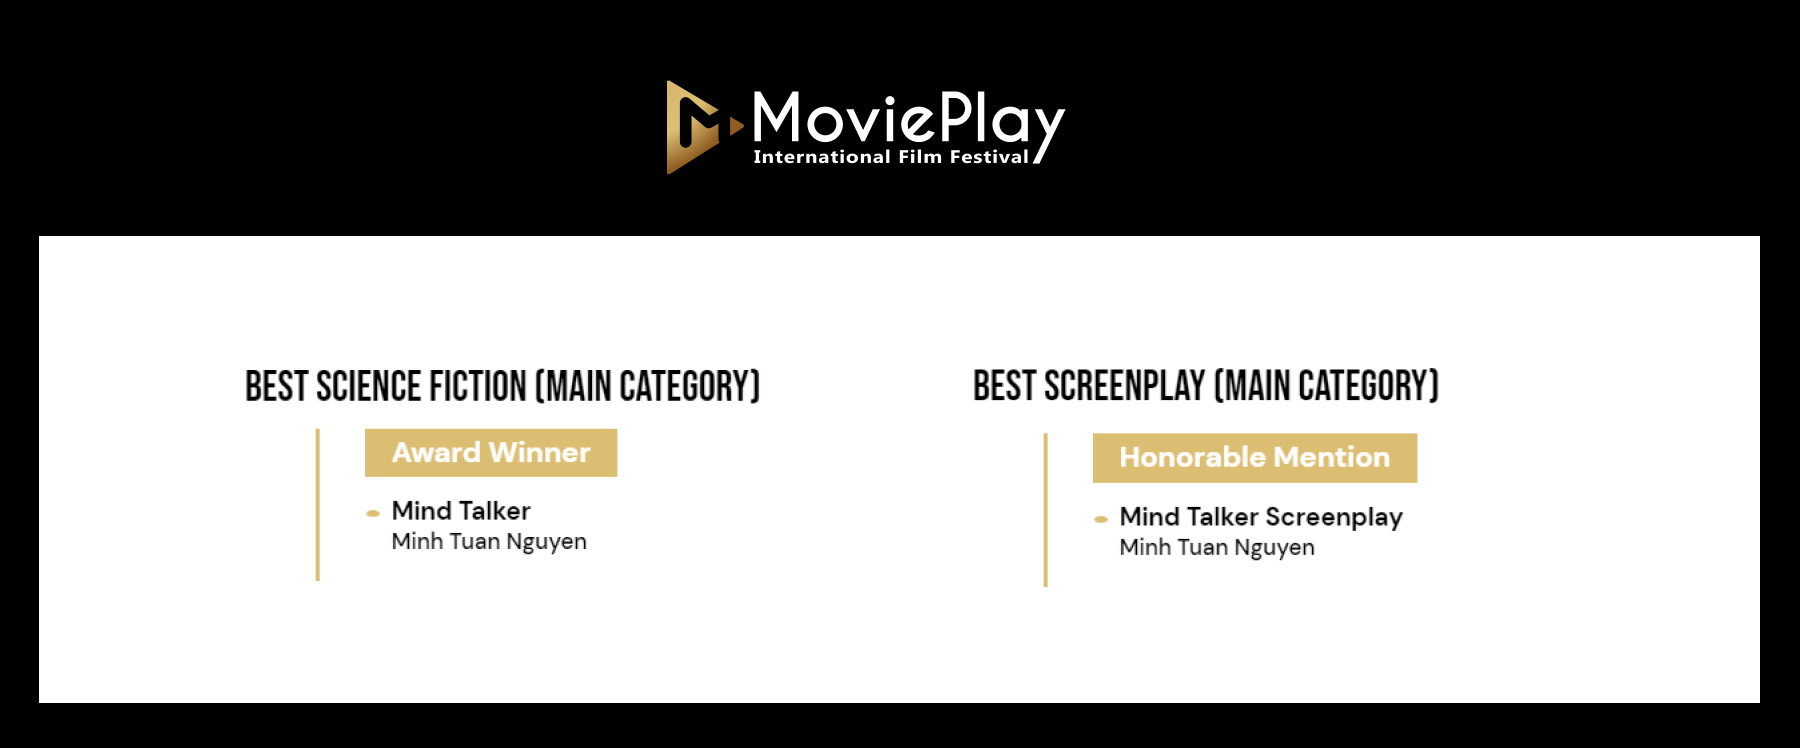 Movie Play Award Winner - Mind Talker